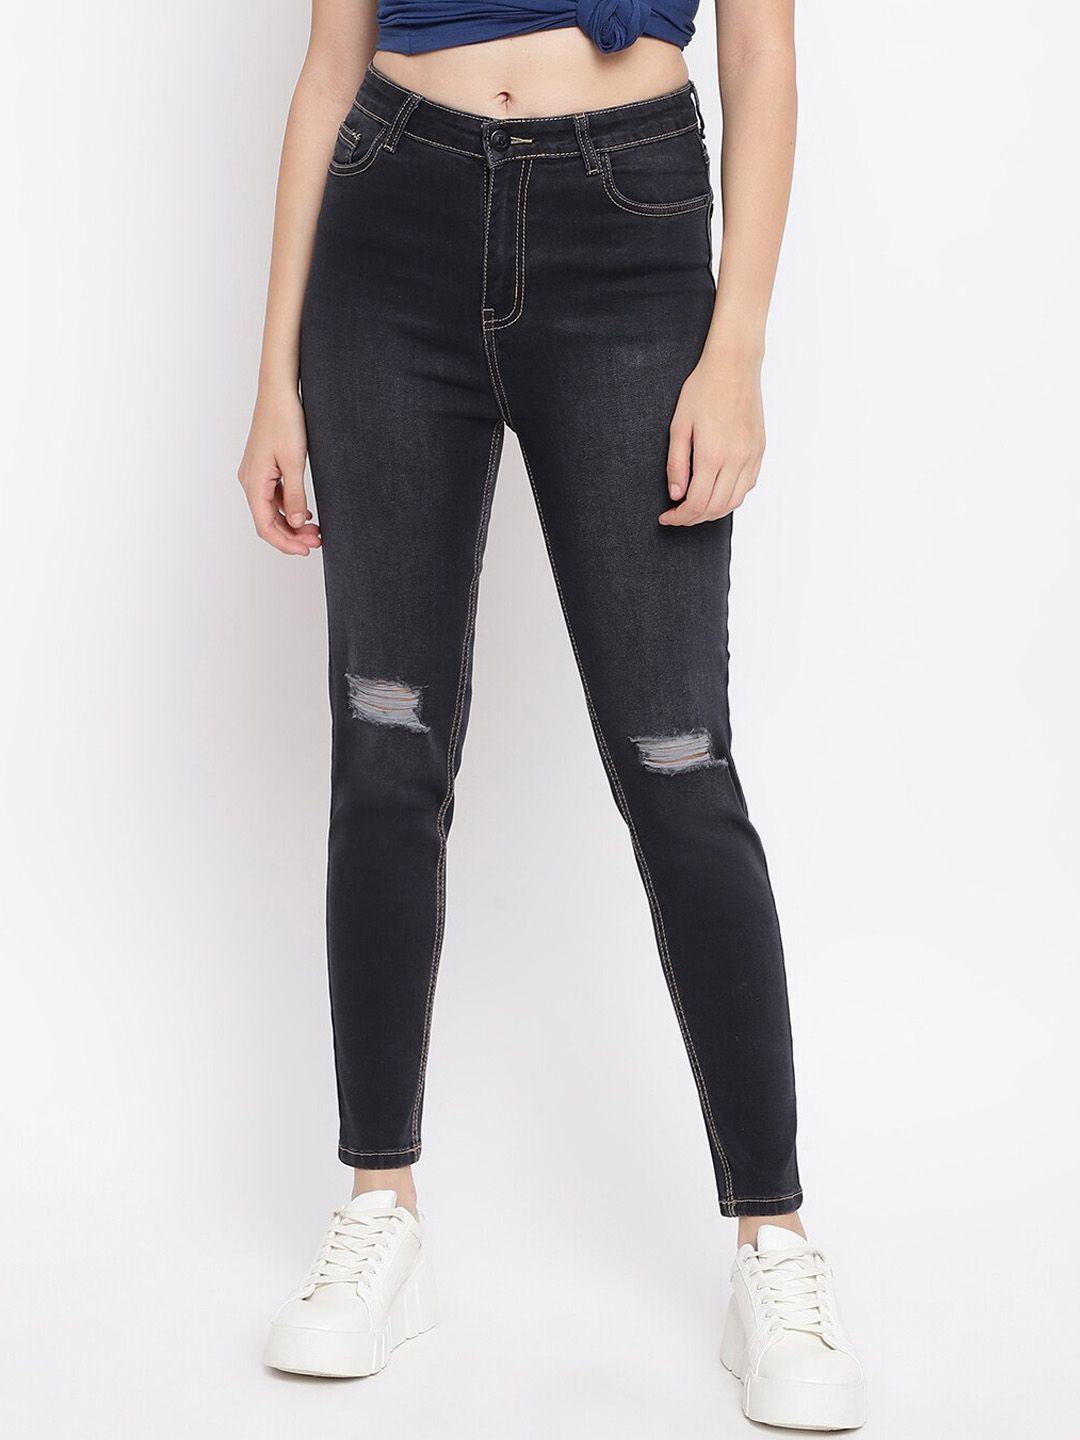 belliskey women black skinny fit mildly distressed jeans